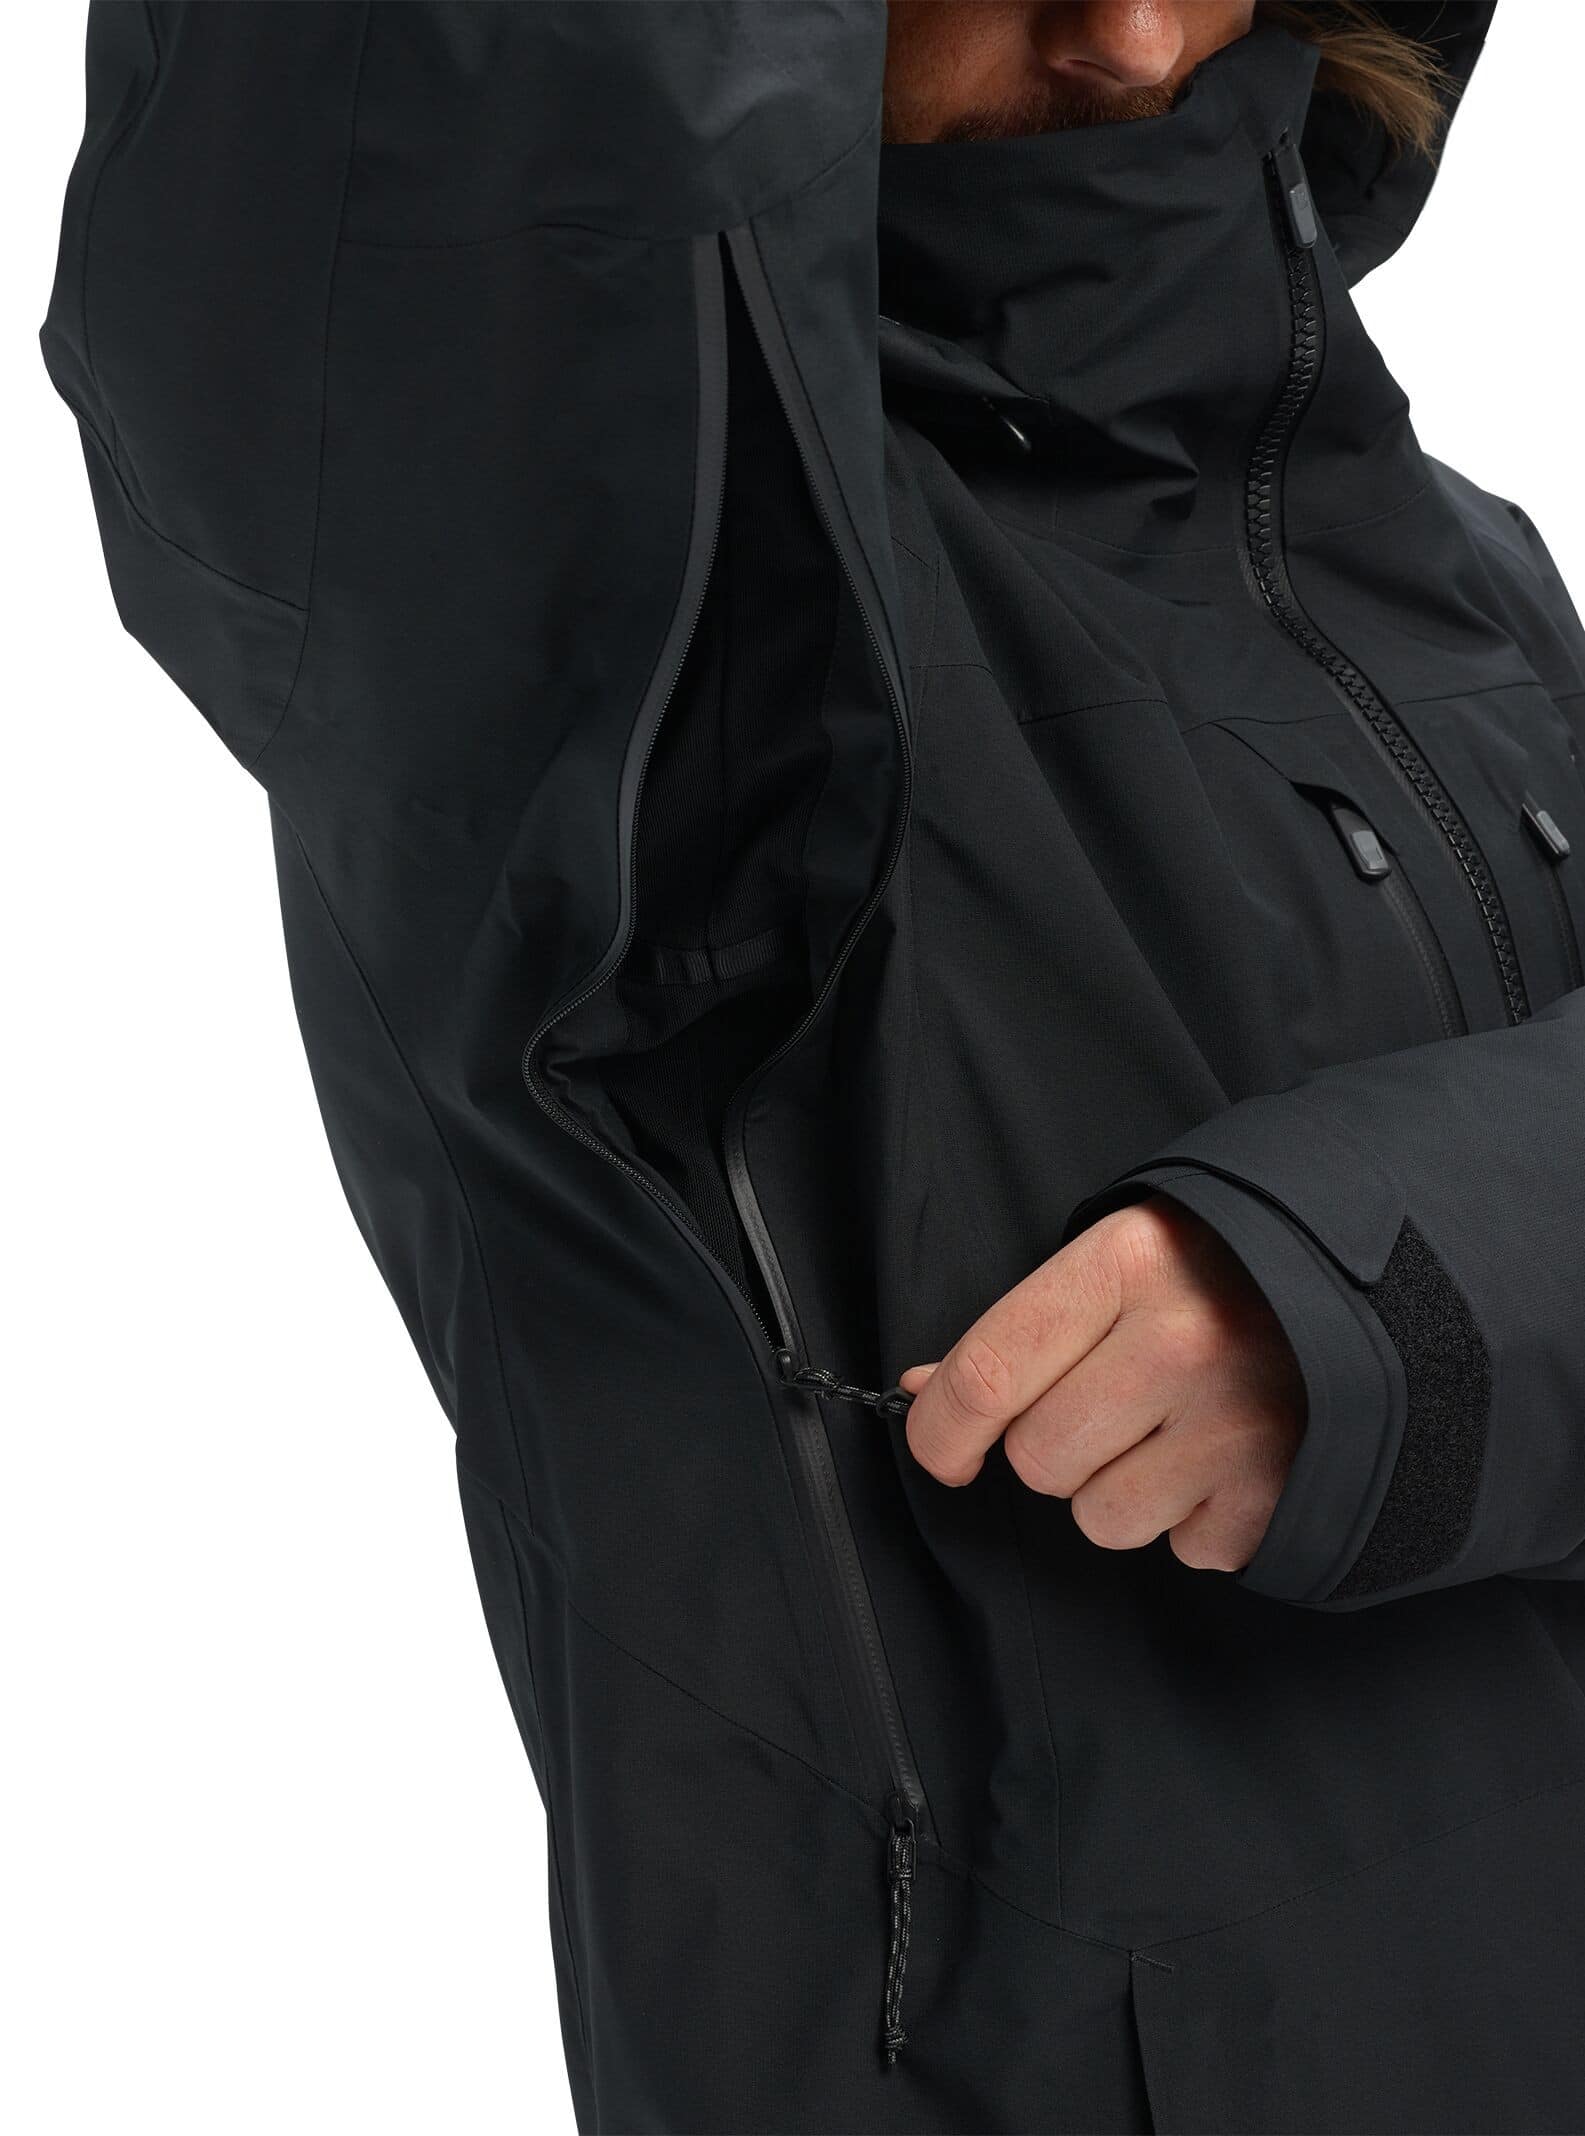 Burton AK Swash GORE-TEX 2L Insulated Jacket - true black | Tactics